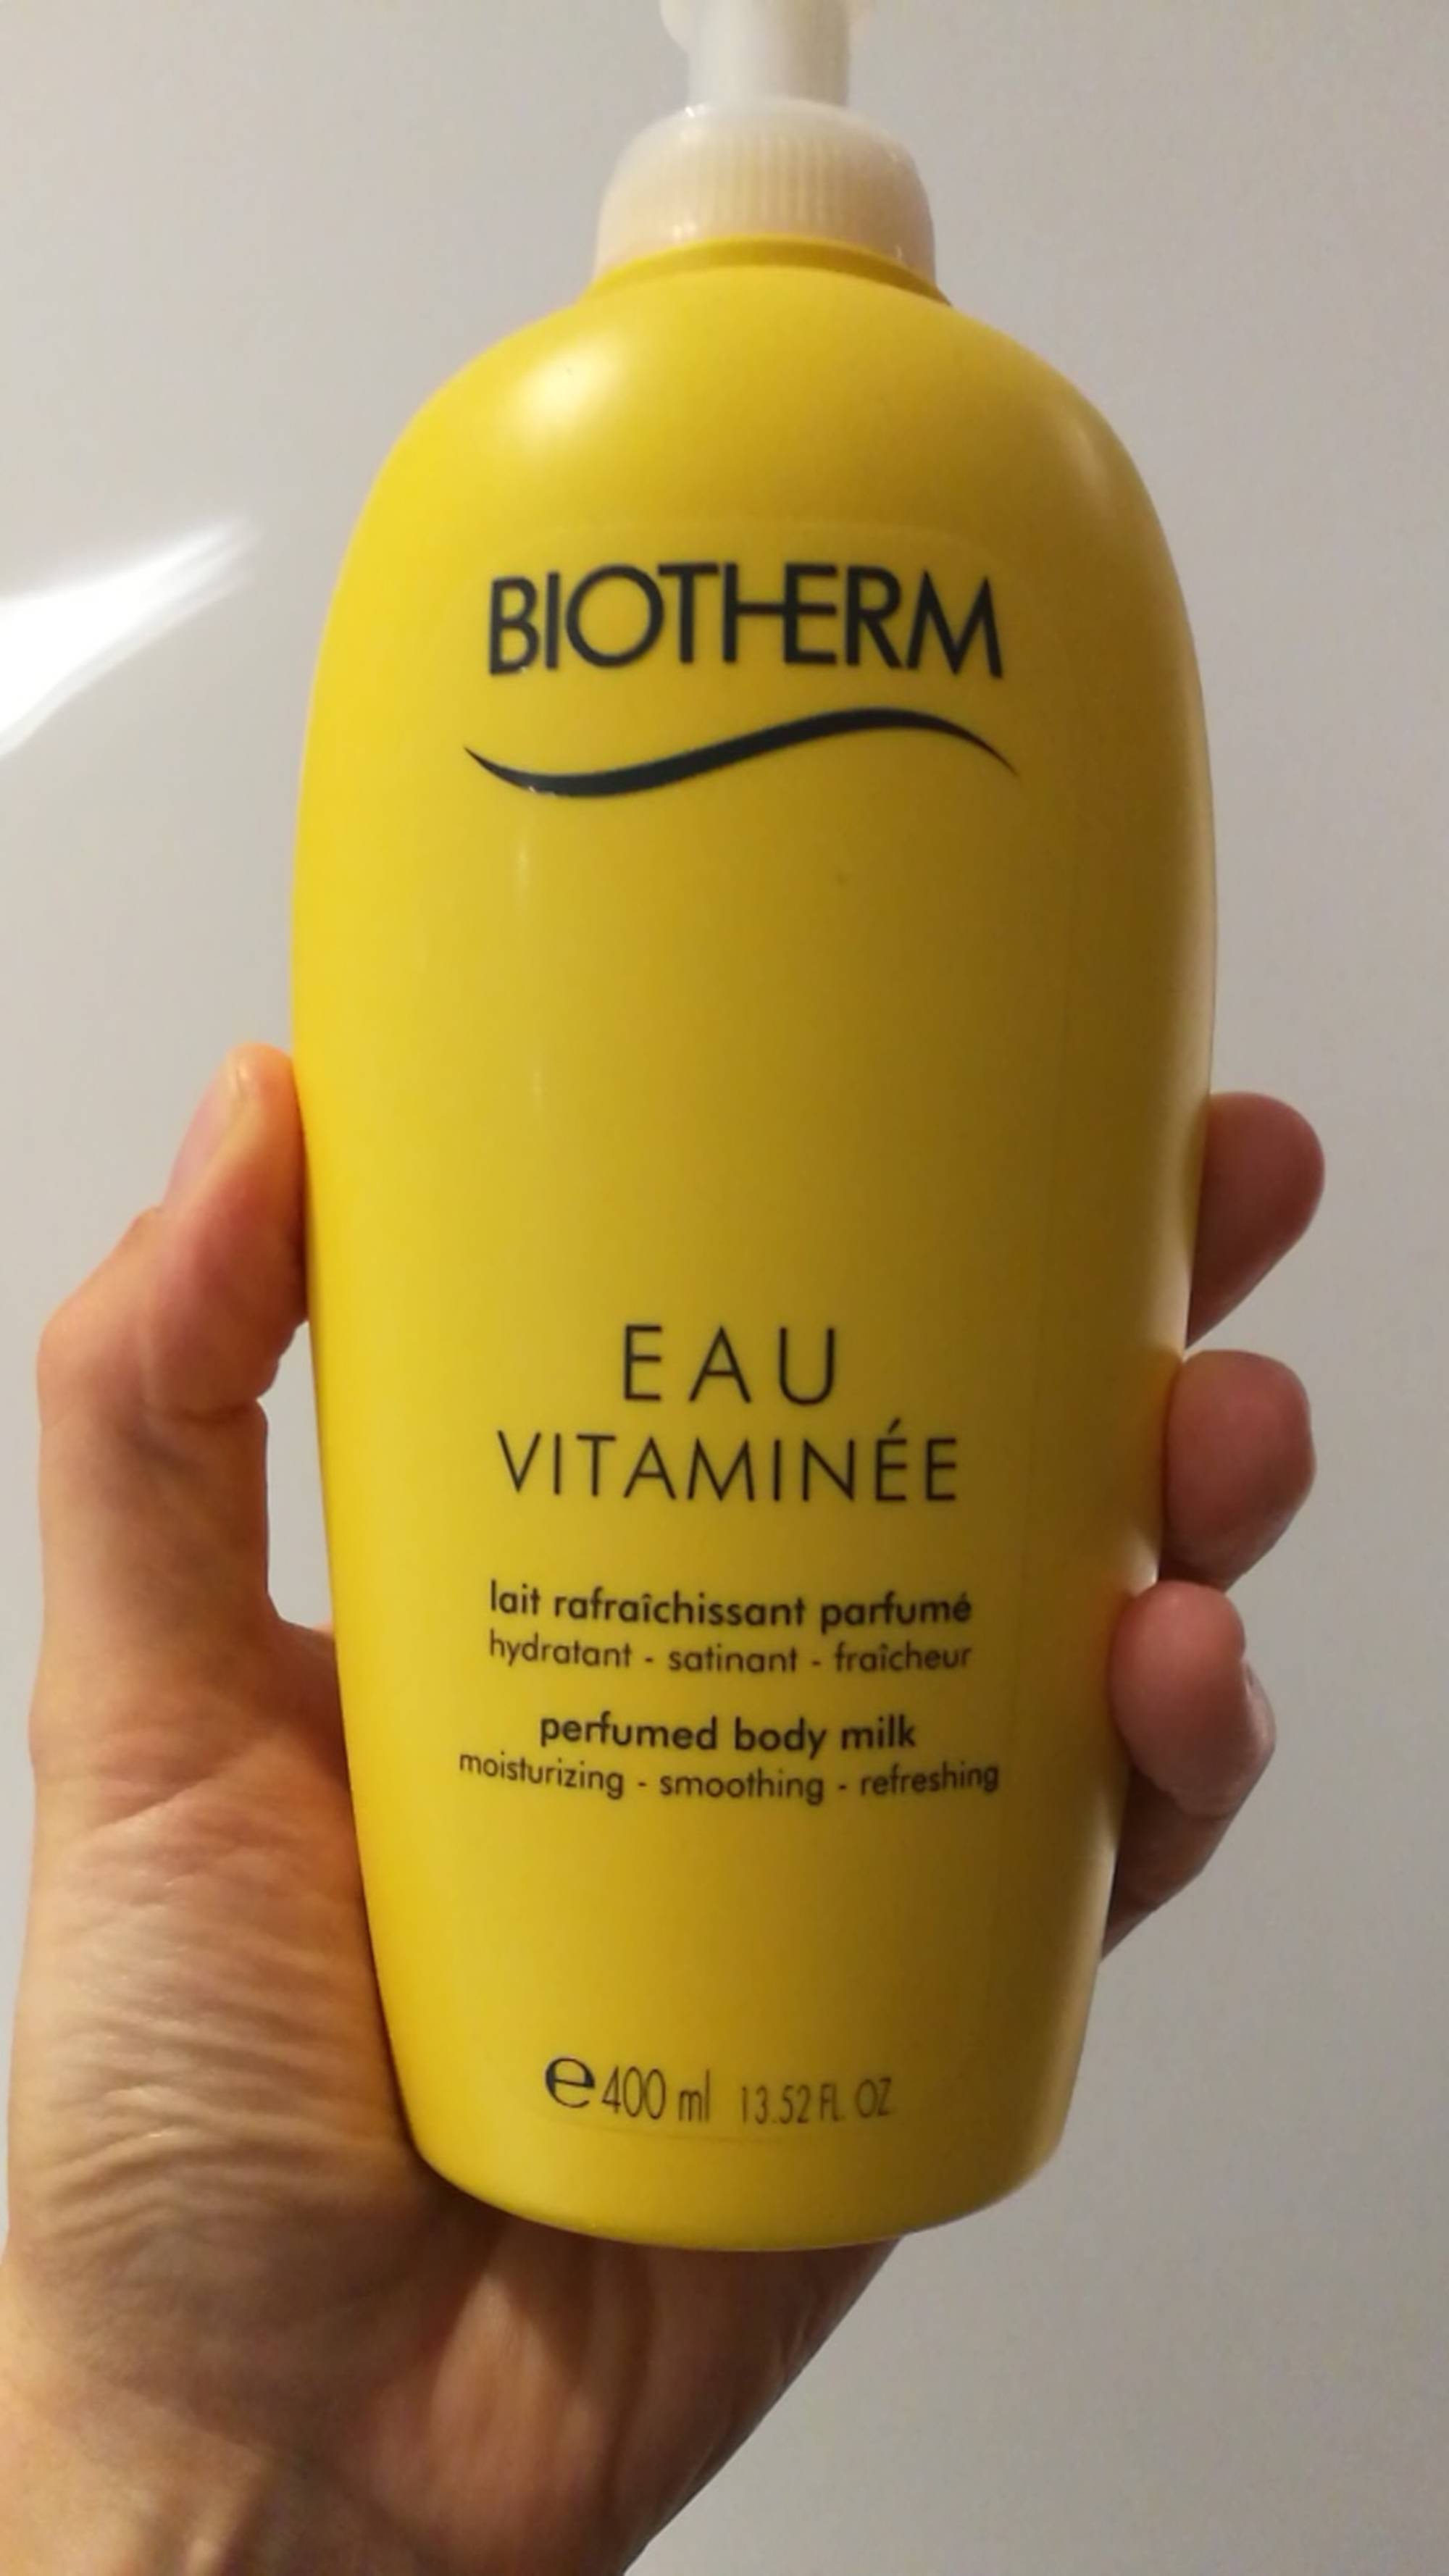 BIOTHERM - Eau vitaminée - Lait rafraîchissant parfumé